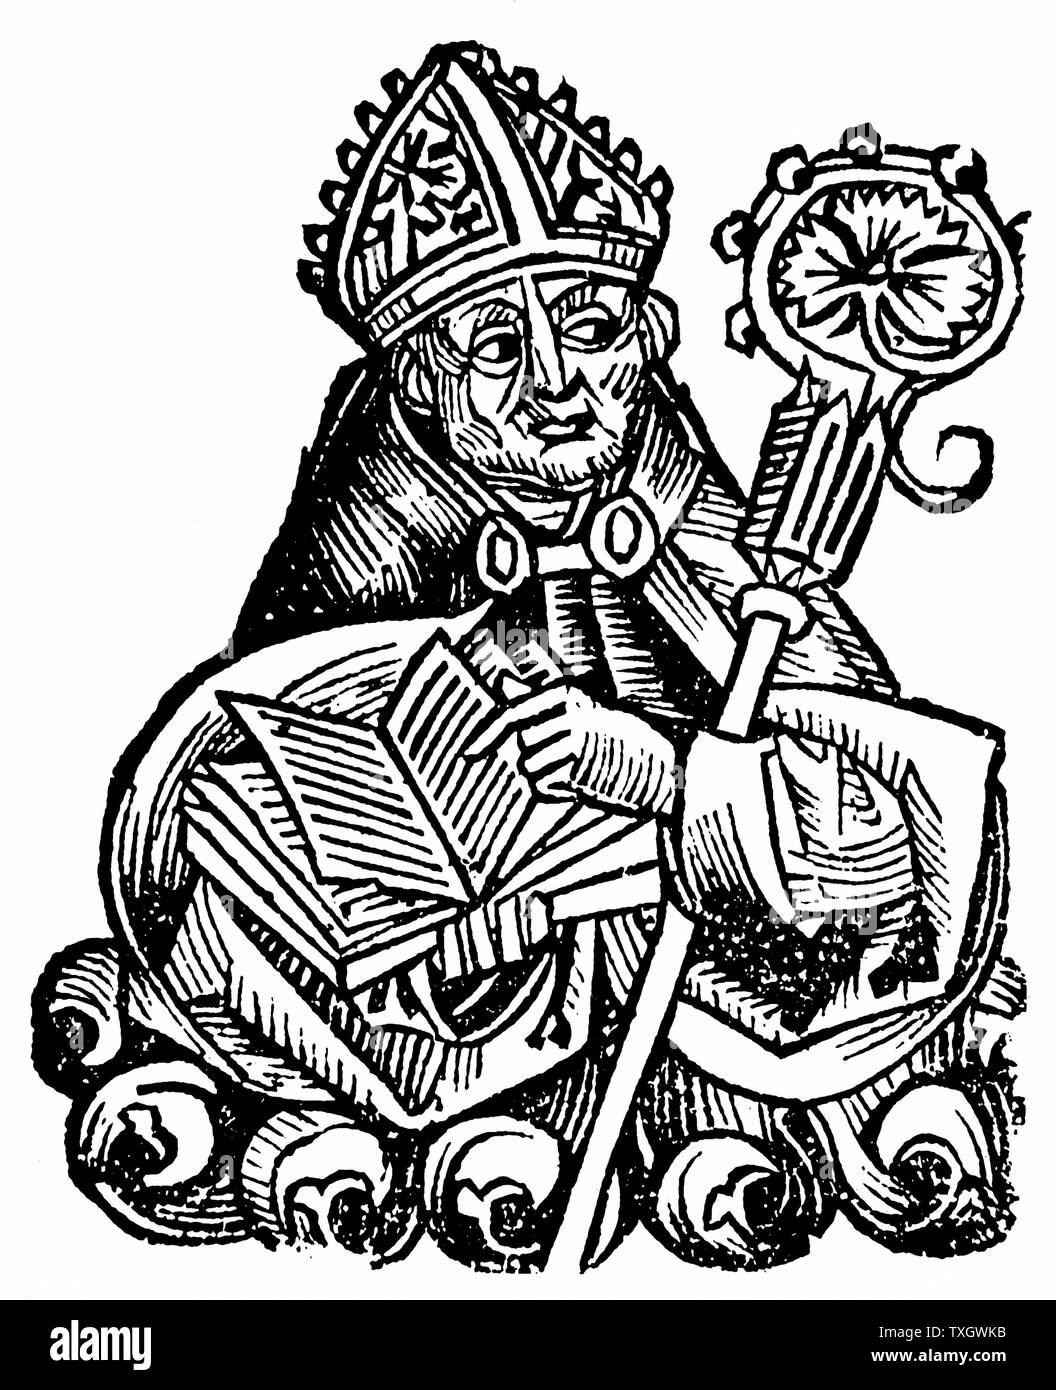 Albertus Magnus (c1200-1280) frère dominicain italien appelé 'Ddocteur universalis'. L'évêque de Ratisbonne, 1260, tenant un livre ouvert. Mêlé la théologie et l'aristotélisme. 1493 Gravure sur bois de Hartmann Schedel 'Liber Chronicarum mundi' (Chronique de Nuremberg) Banque D'Images